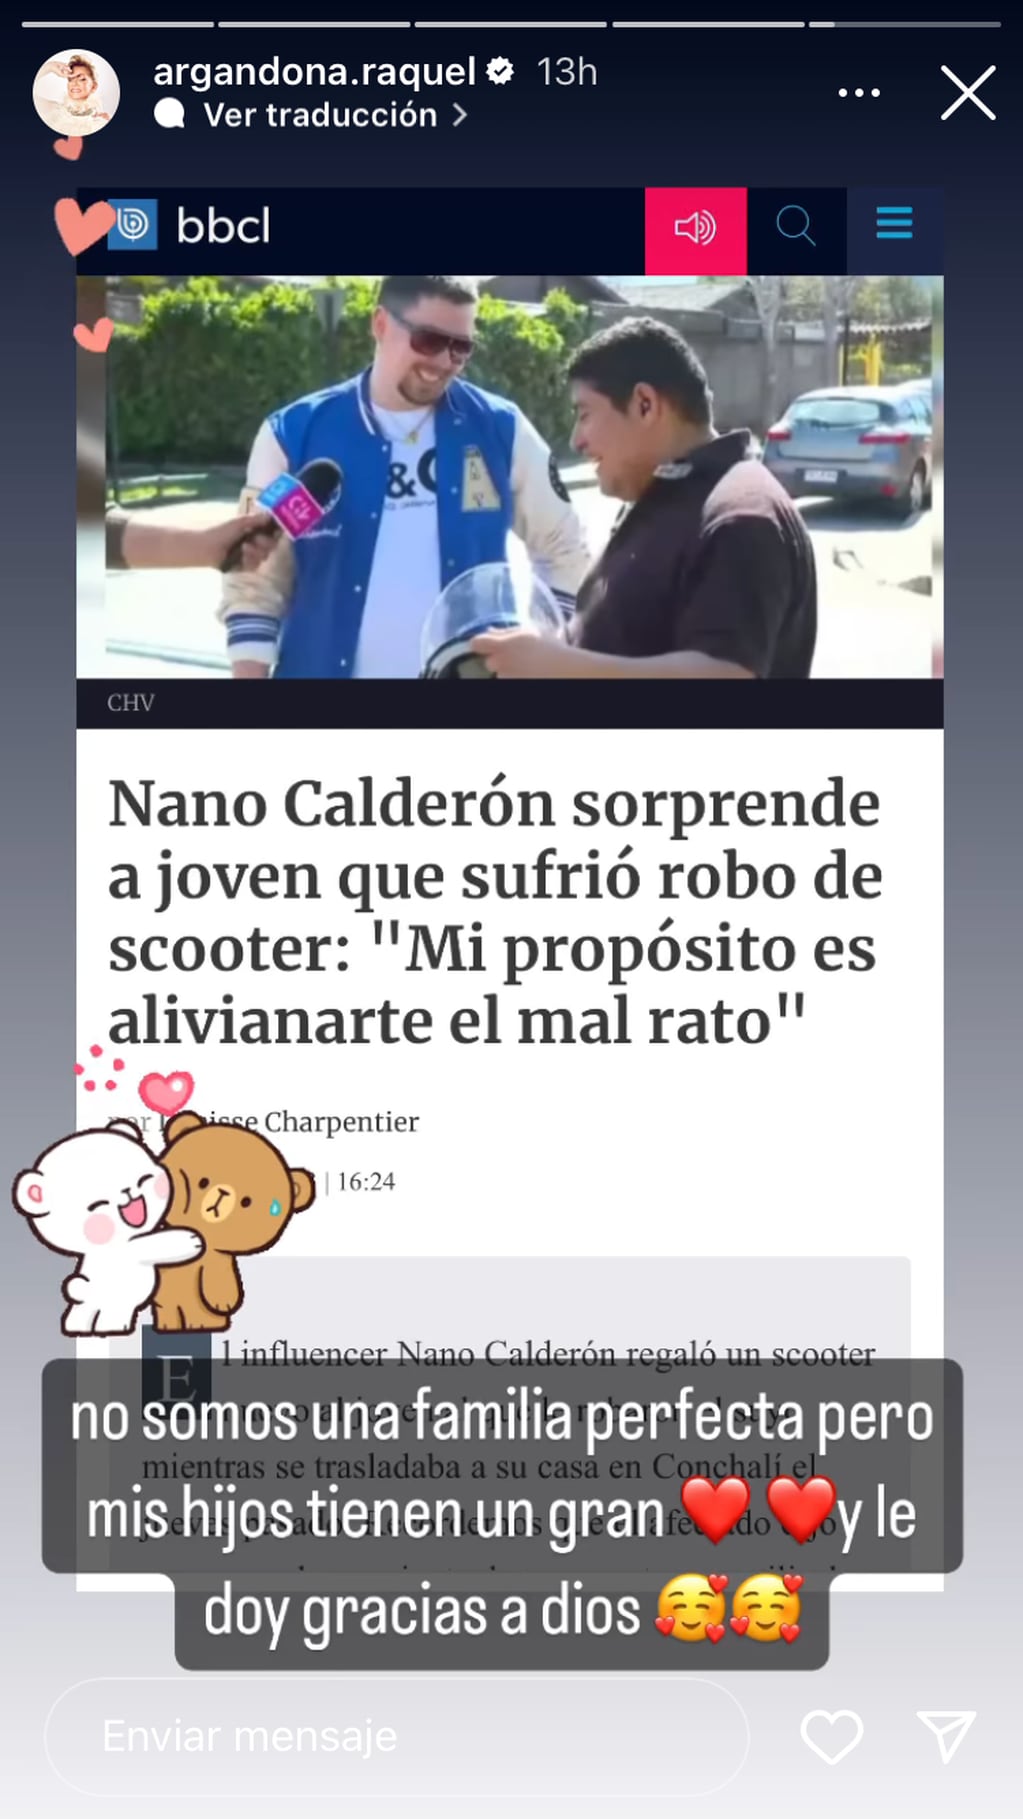 Raquel Argandoña reaccionó al especial gesto de Nano Calderón con hombre víctima de robo